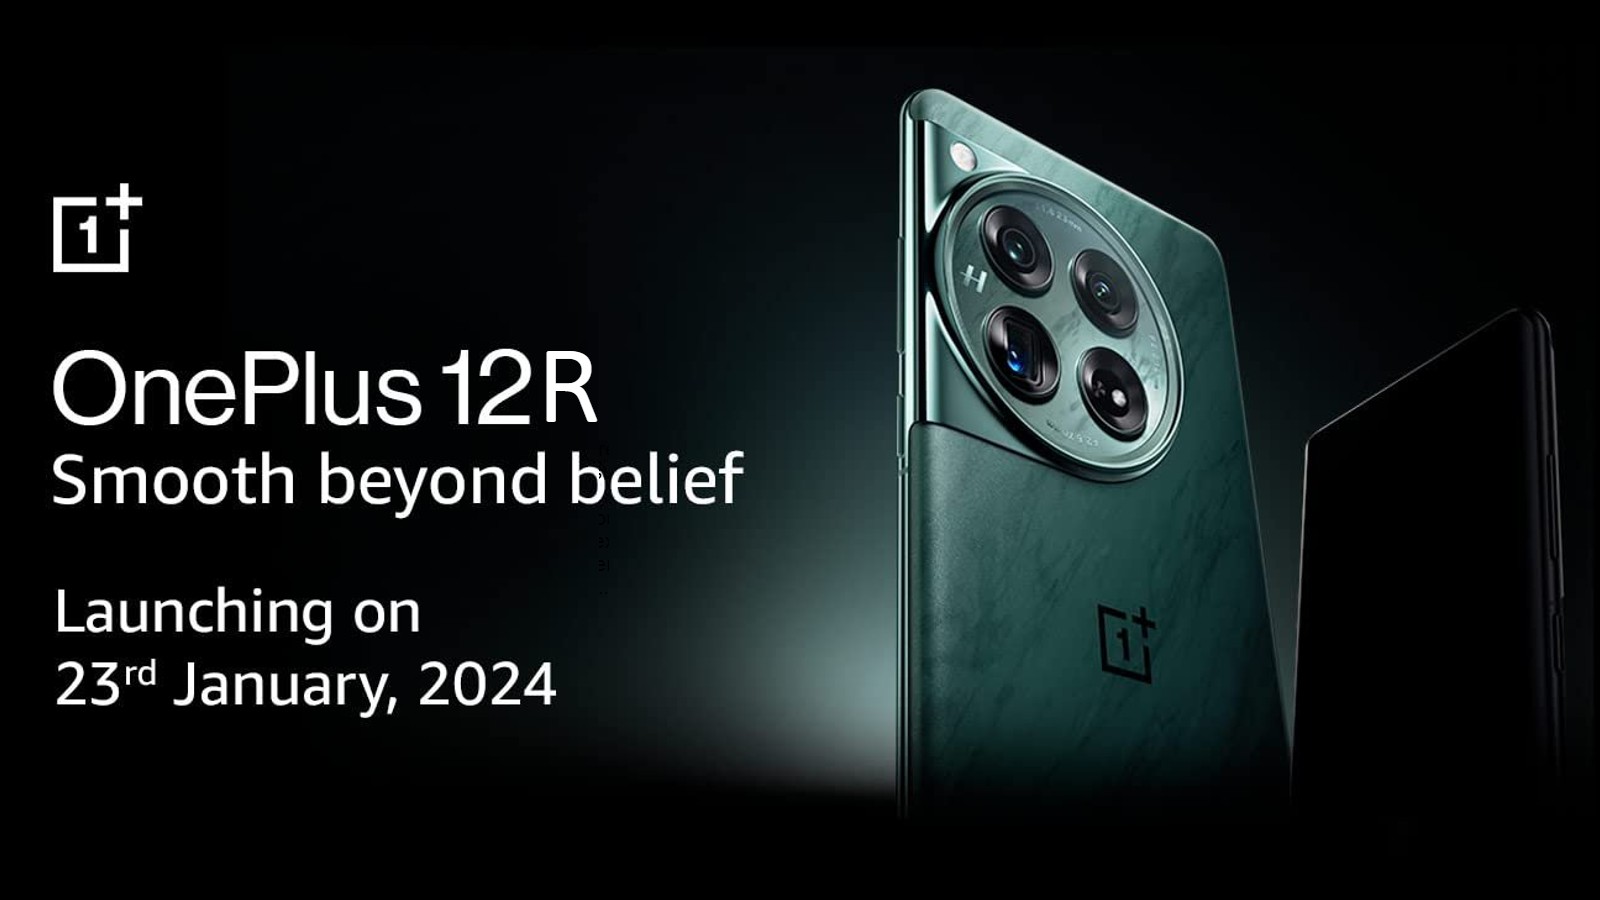 صورة الإعلان عن هاتف OnePlus 12R الجديد للفئة المتوسطة العليا